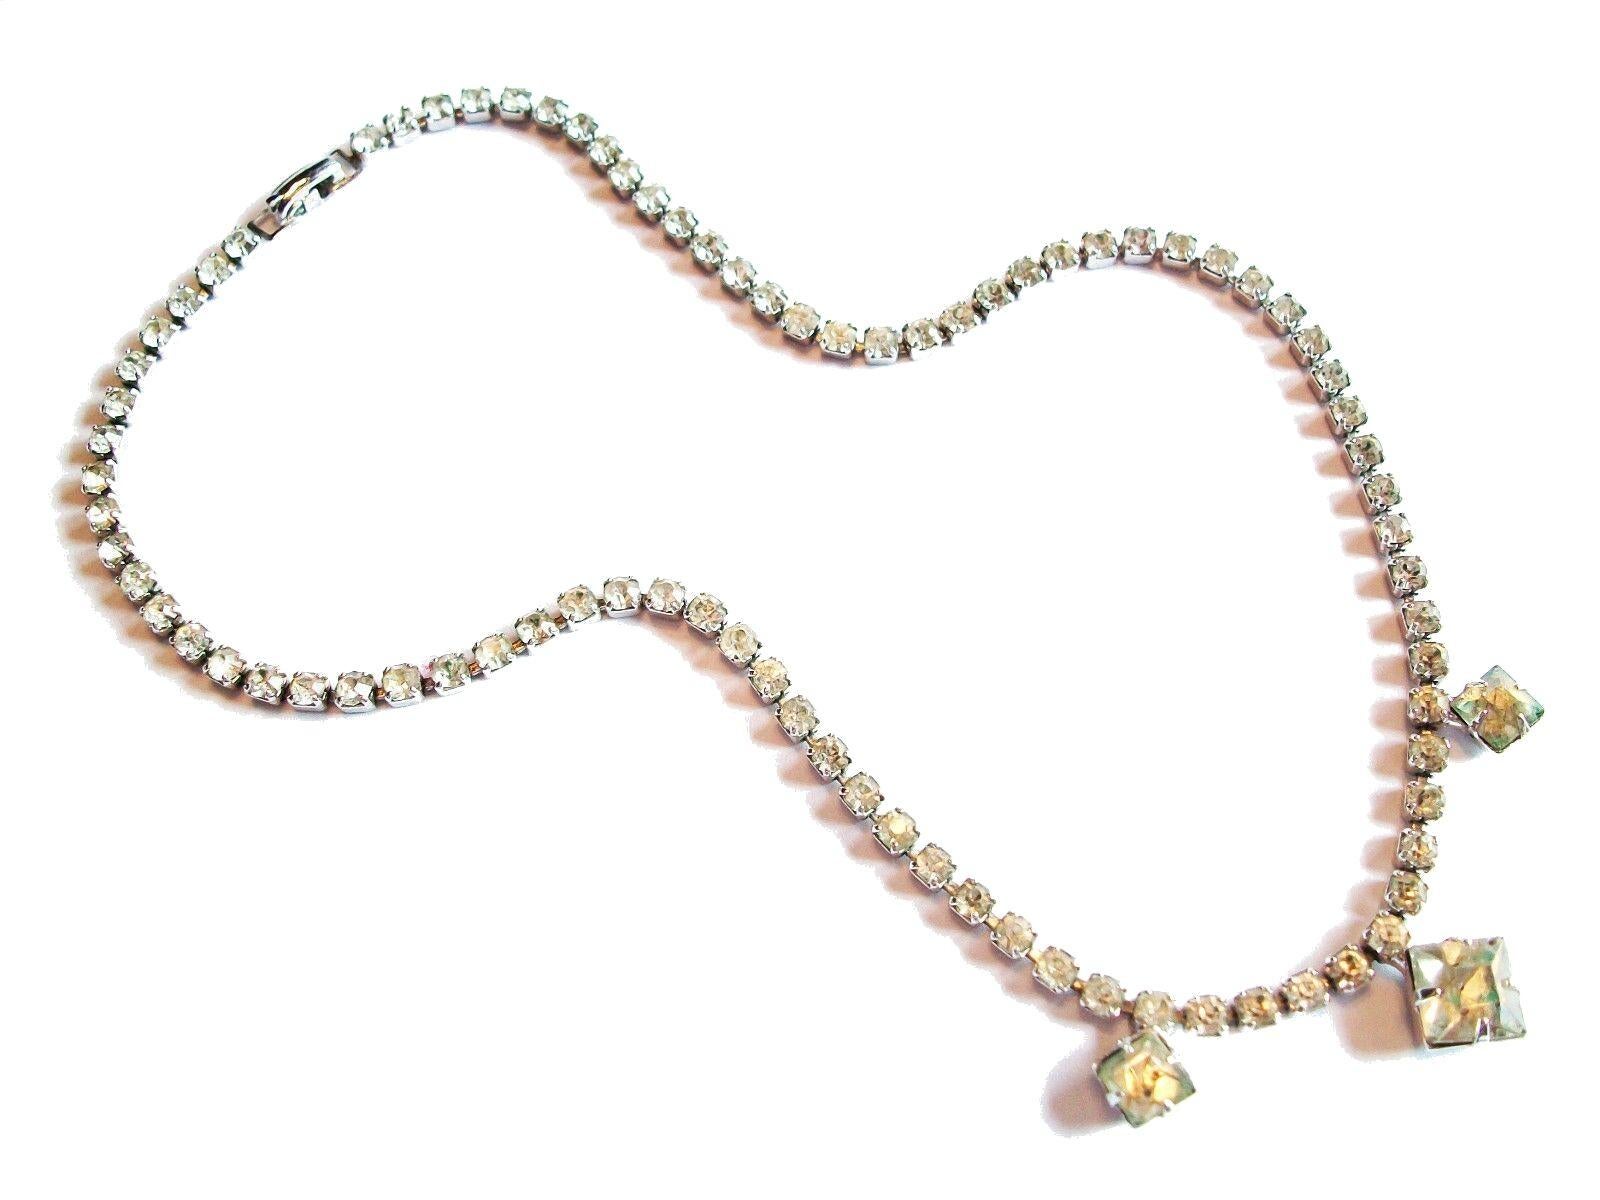 Art-Déco-Halskette mit Strasssteinen in Krallenform - unsigniert - um 1950.

Ausgezeichneter Vintage-Zustand - kein Verlust - keine Beschädigung - keine Reparaturen - starke und feste Spange.

Größe - 14 3/4